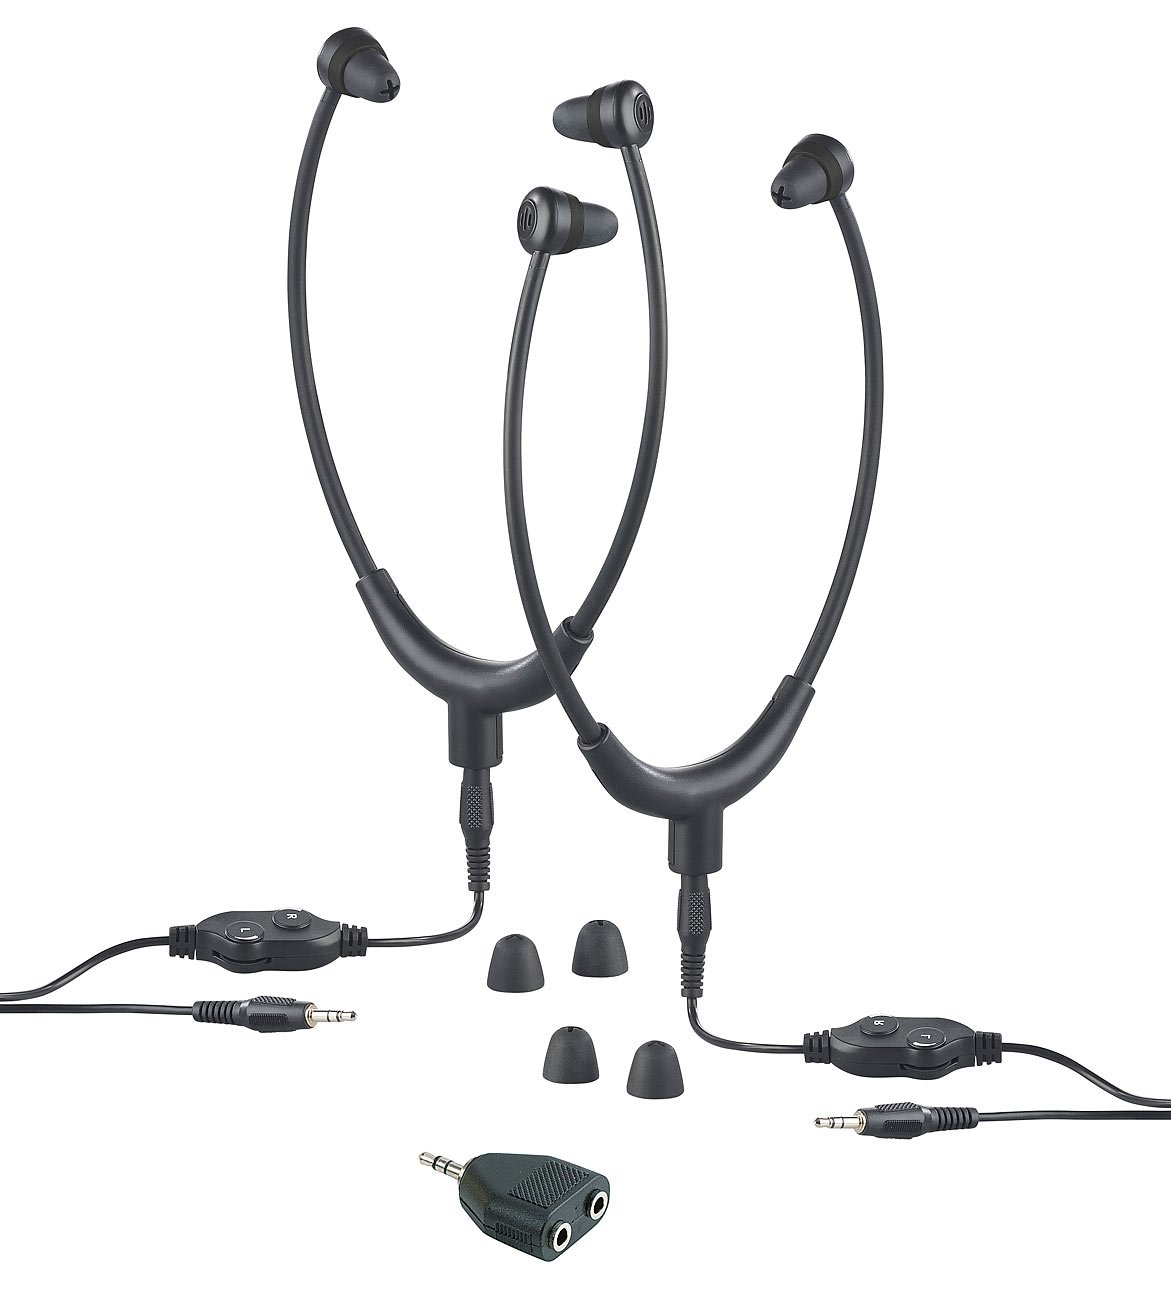 Newgen Medicals Kopfhörer für TVs: 2 TV-Kinnbügel-Kopfhörer, Stereo-Verteiler, 3,5-mm-Klinke, bis 117 dB (Kopfhörer mit Kabelfernsteuerung, Kopfhörer mit Audiokabeln)